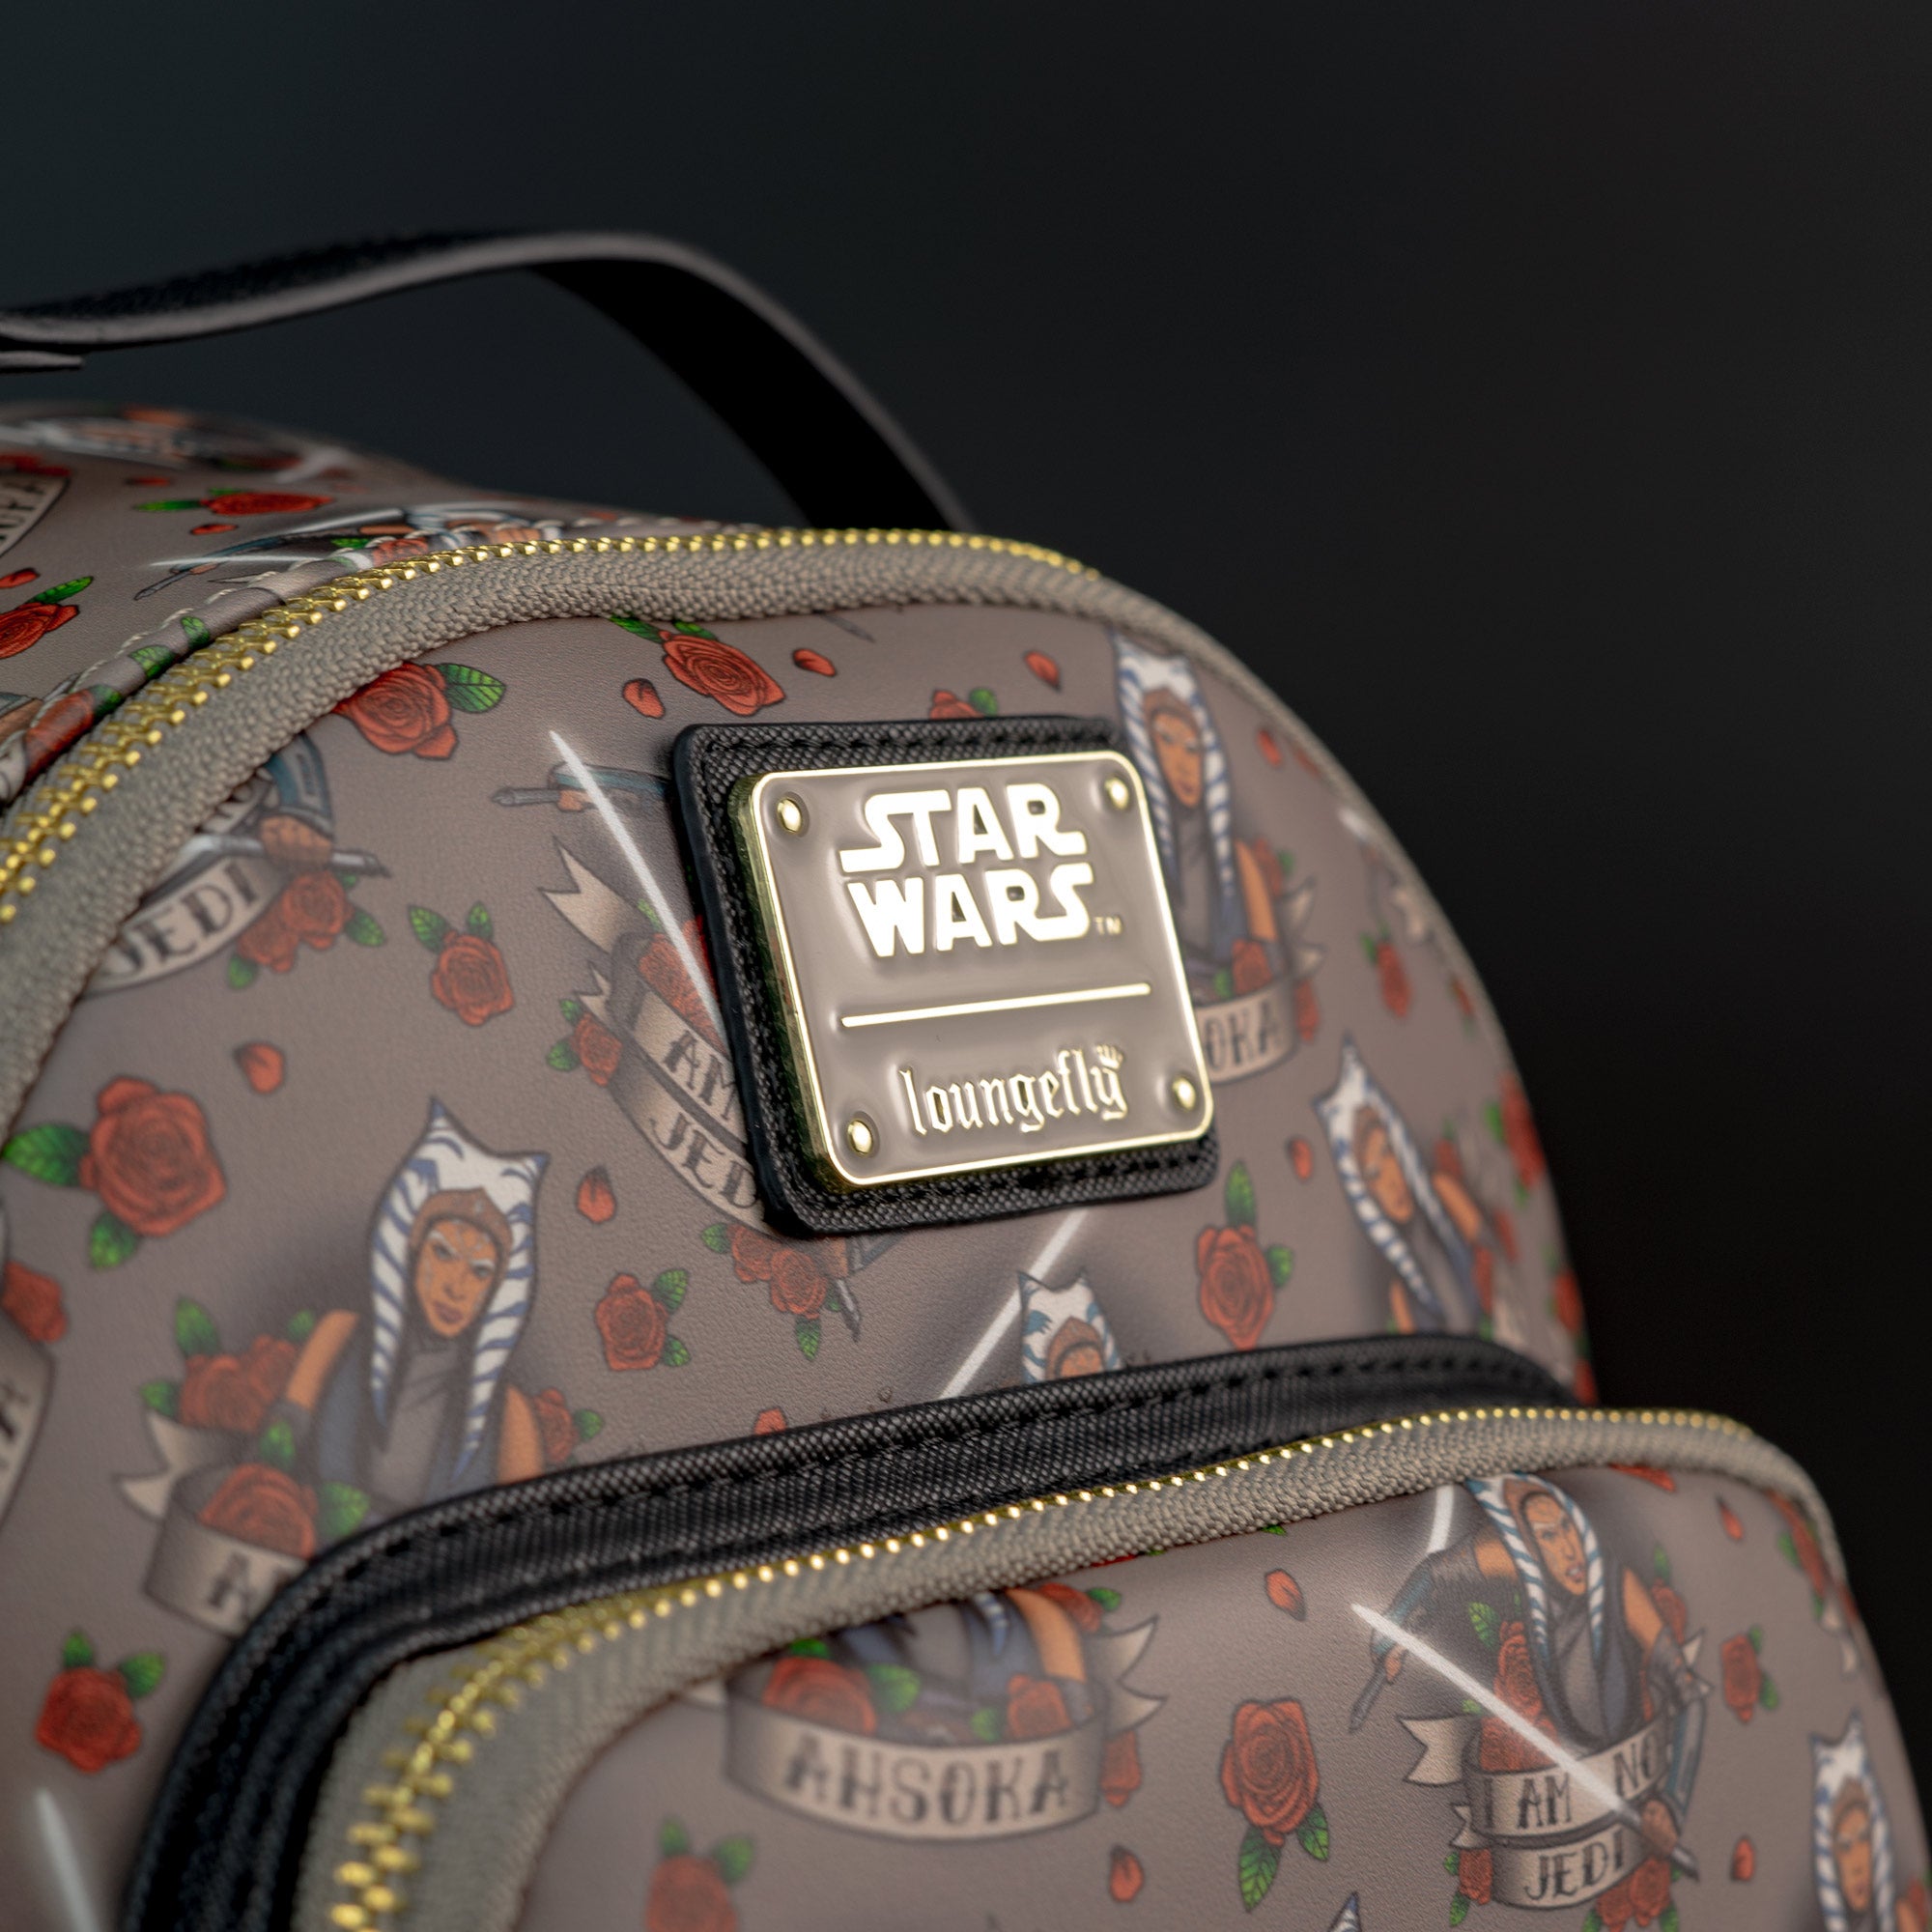 Loungefly x Star Wars Ahsoka Tattoo Mini Backpack